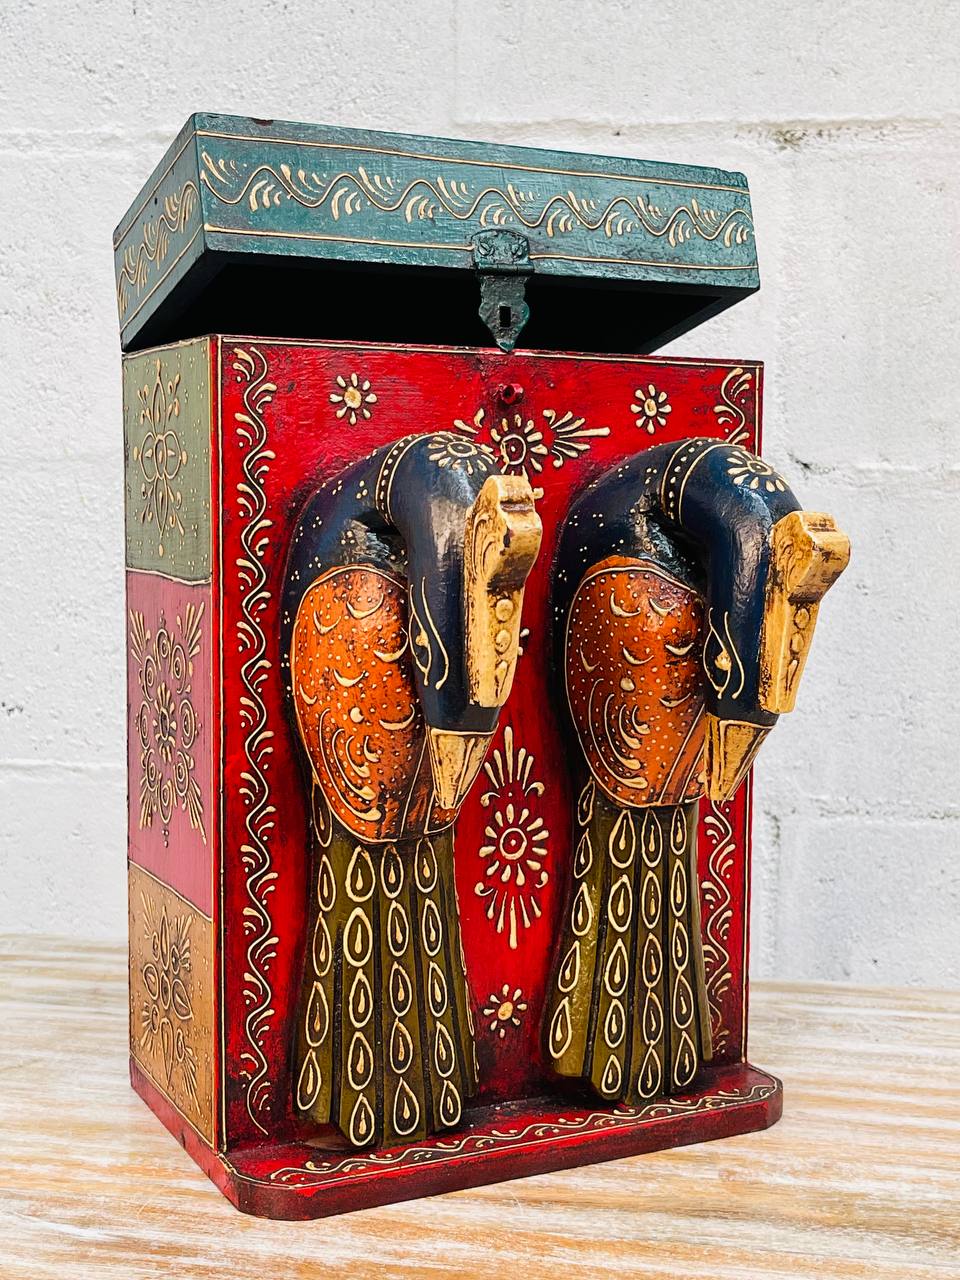 Caja Botellera "Doble Elegancia" - Madera Tallada, Pintada a Mano con Diseños, Doble Compartimento y Cabeza de Pavo